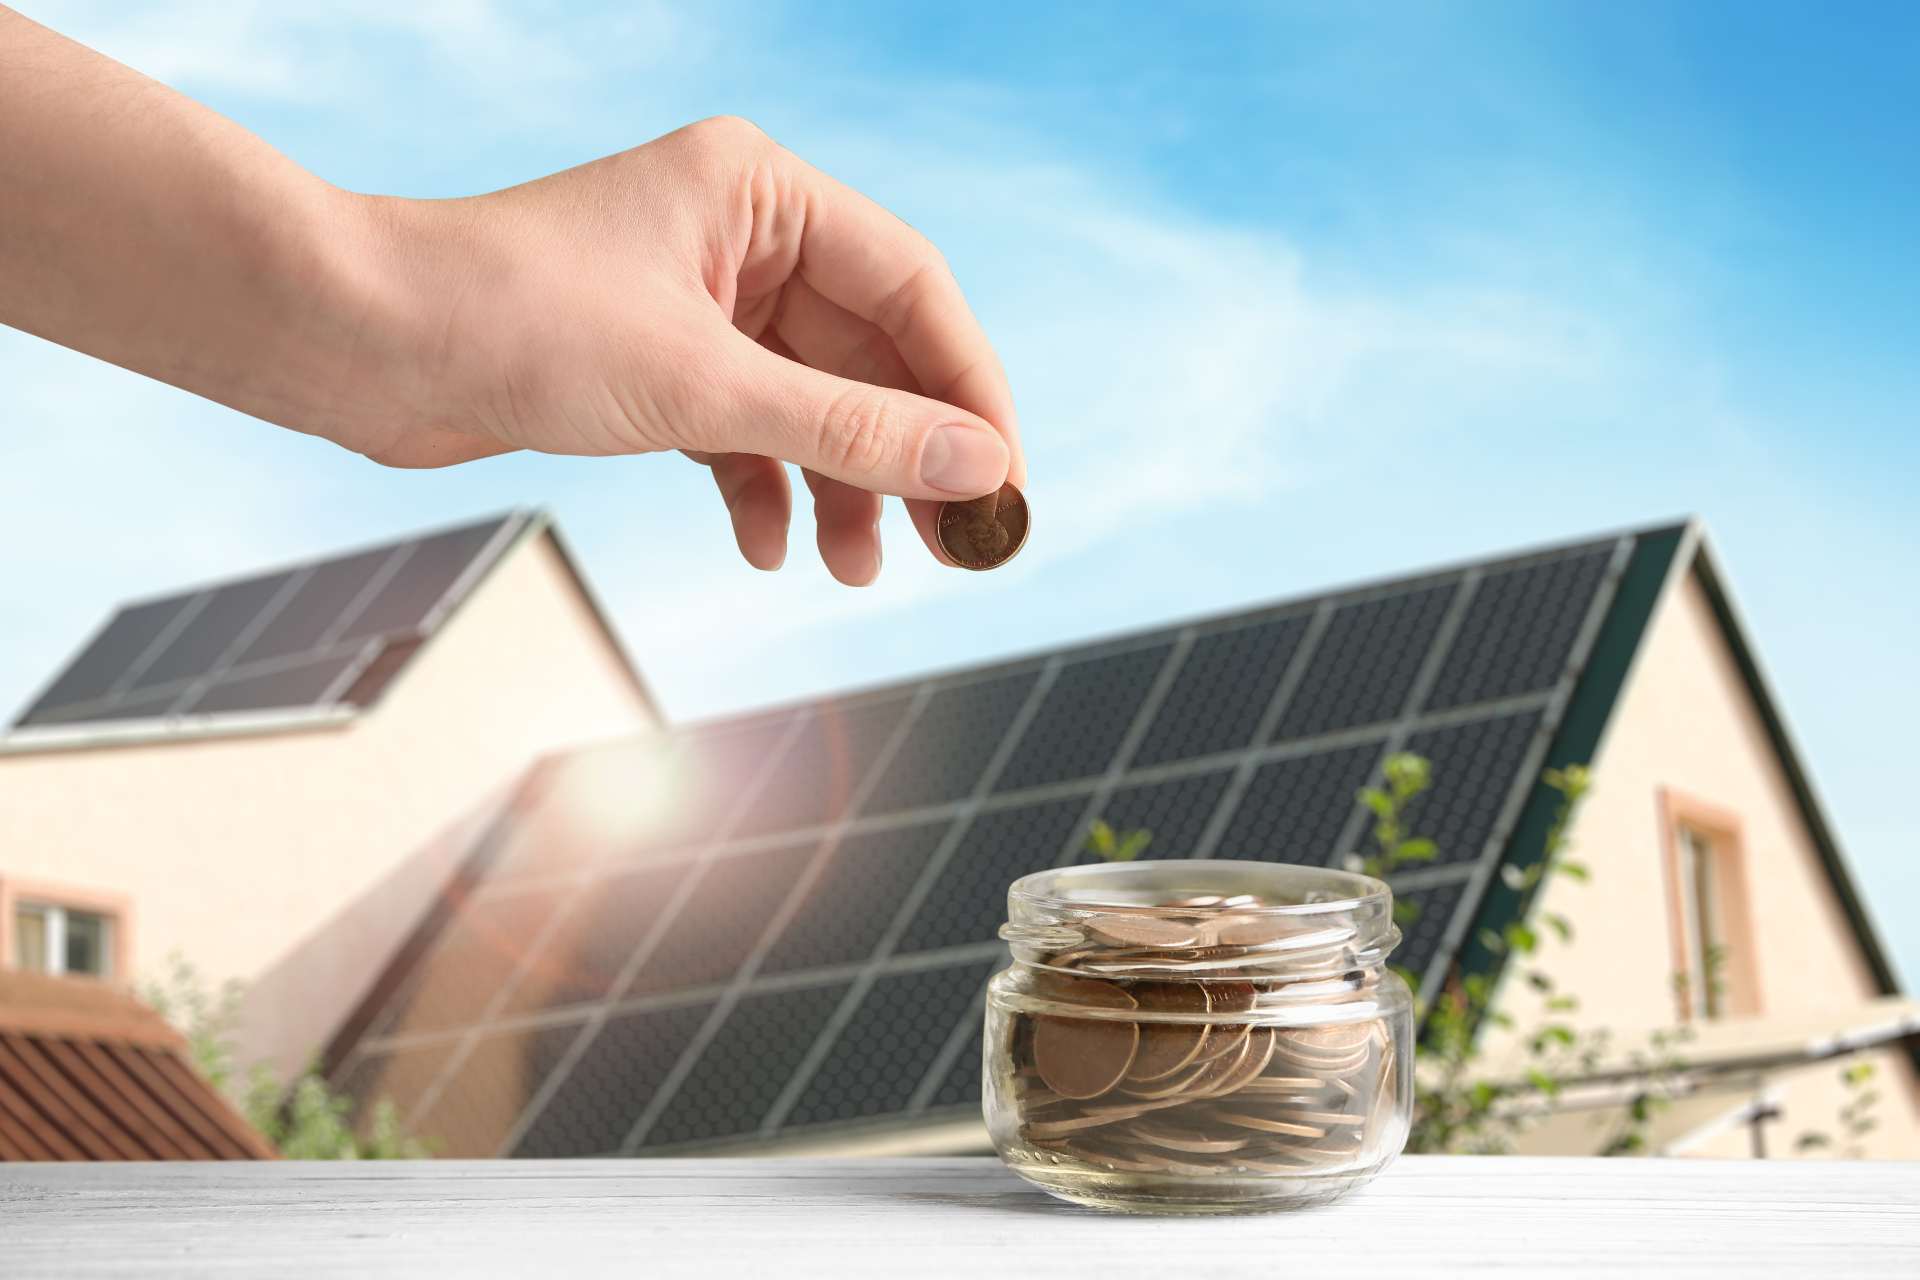 principales ventajas de la energía solar - Mygreenhouse